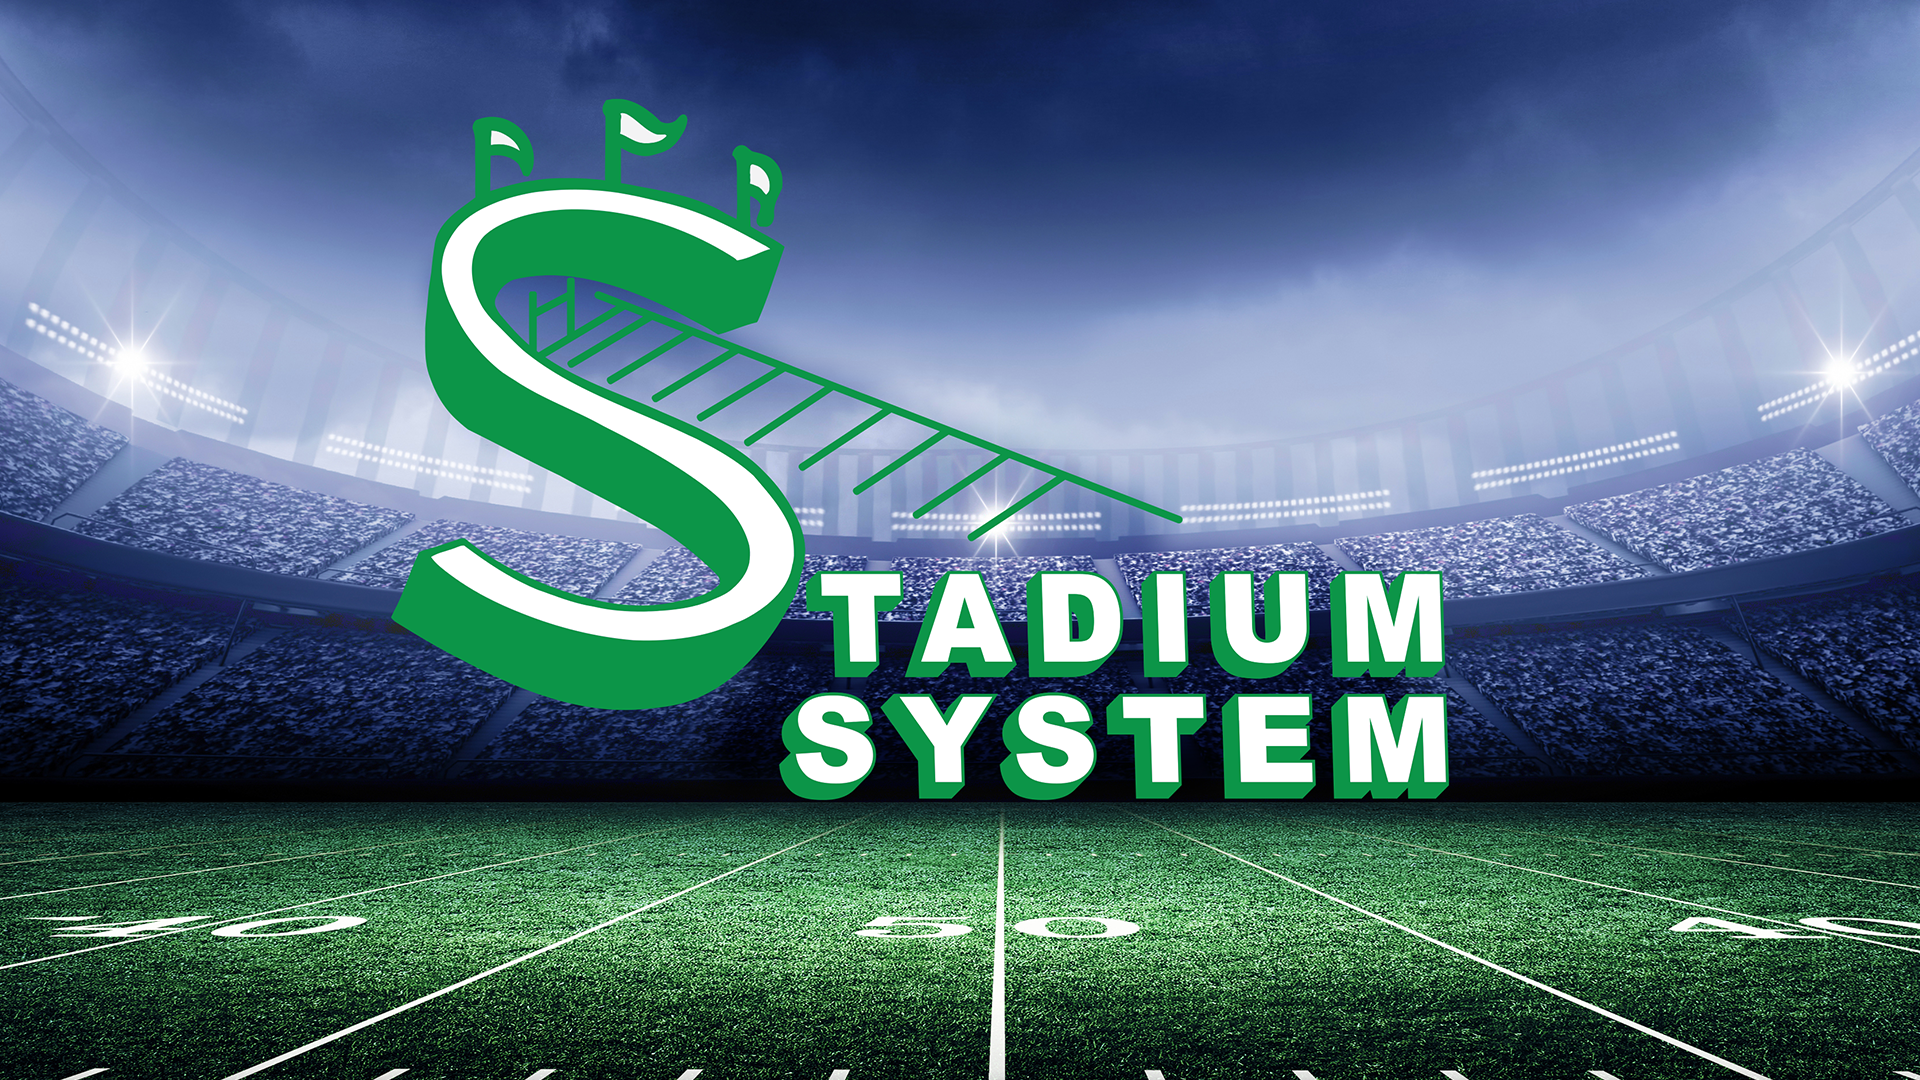 Stadium Team Stores - Stadium System Inc.